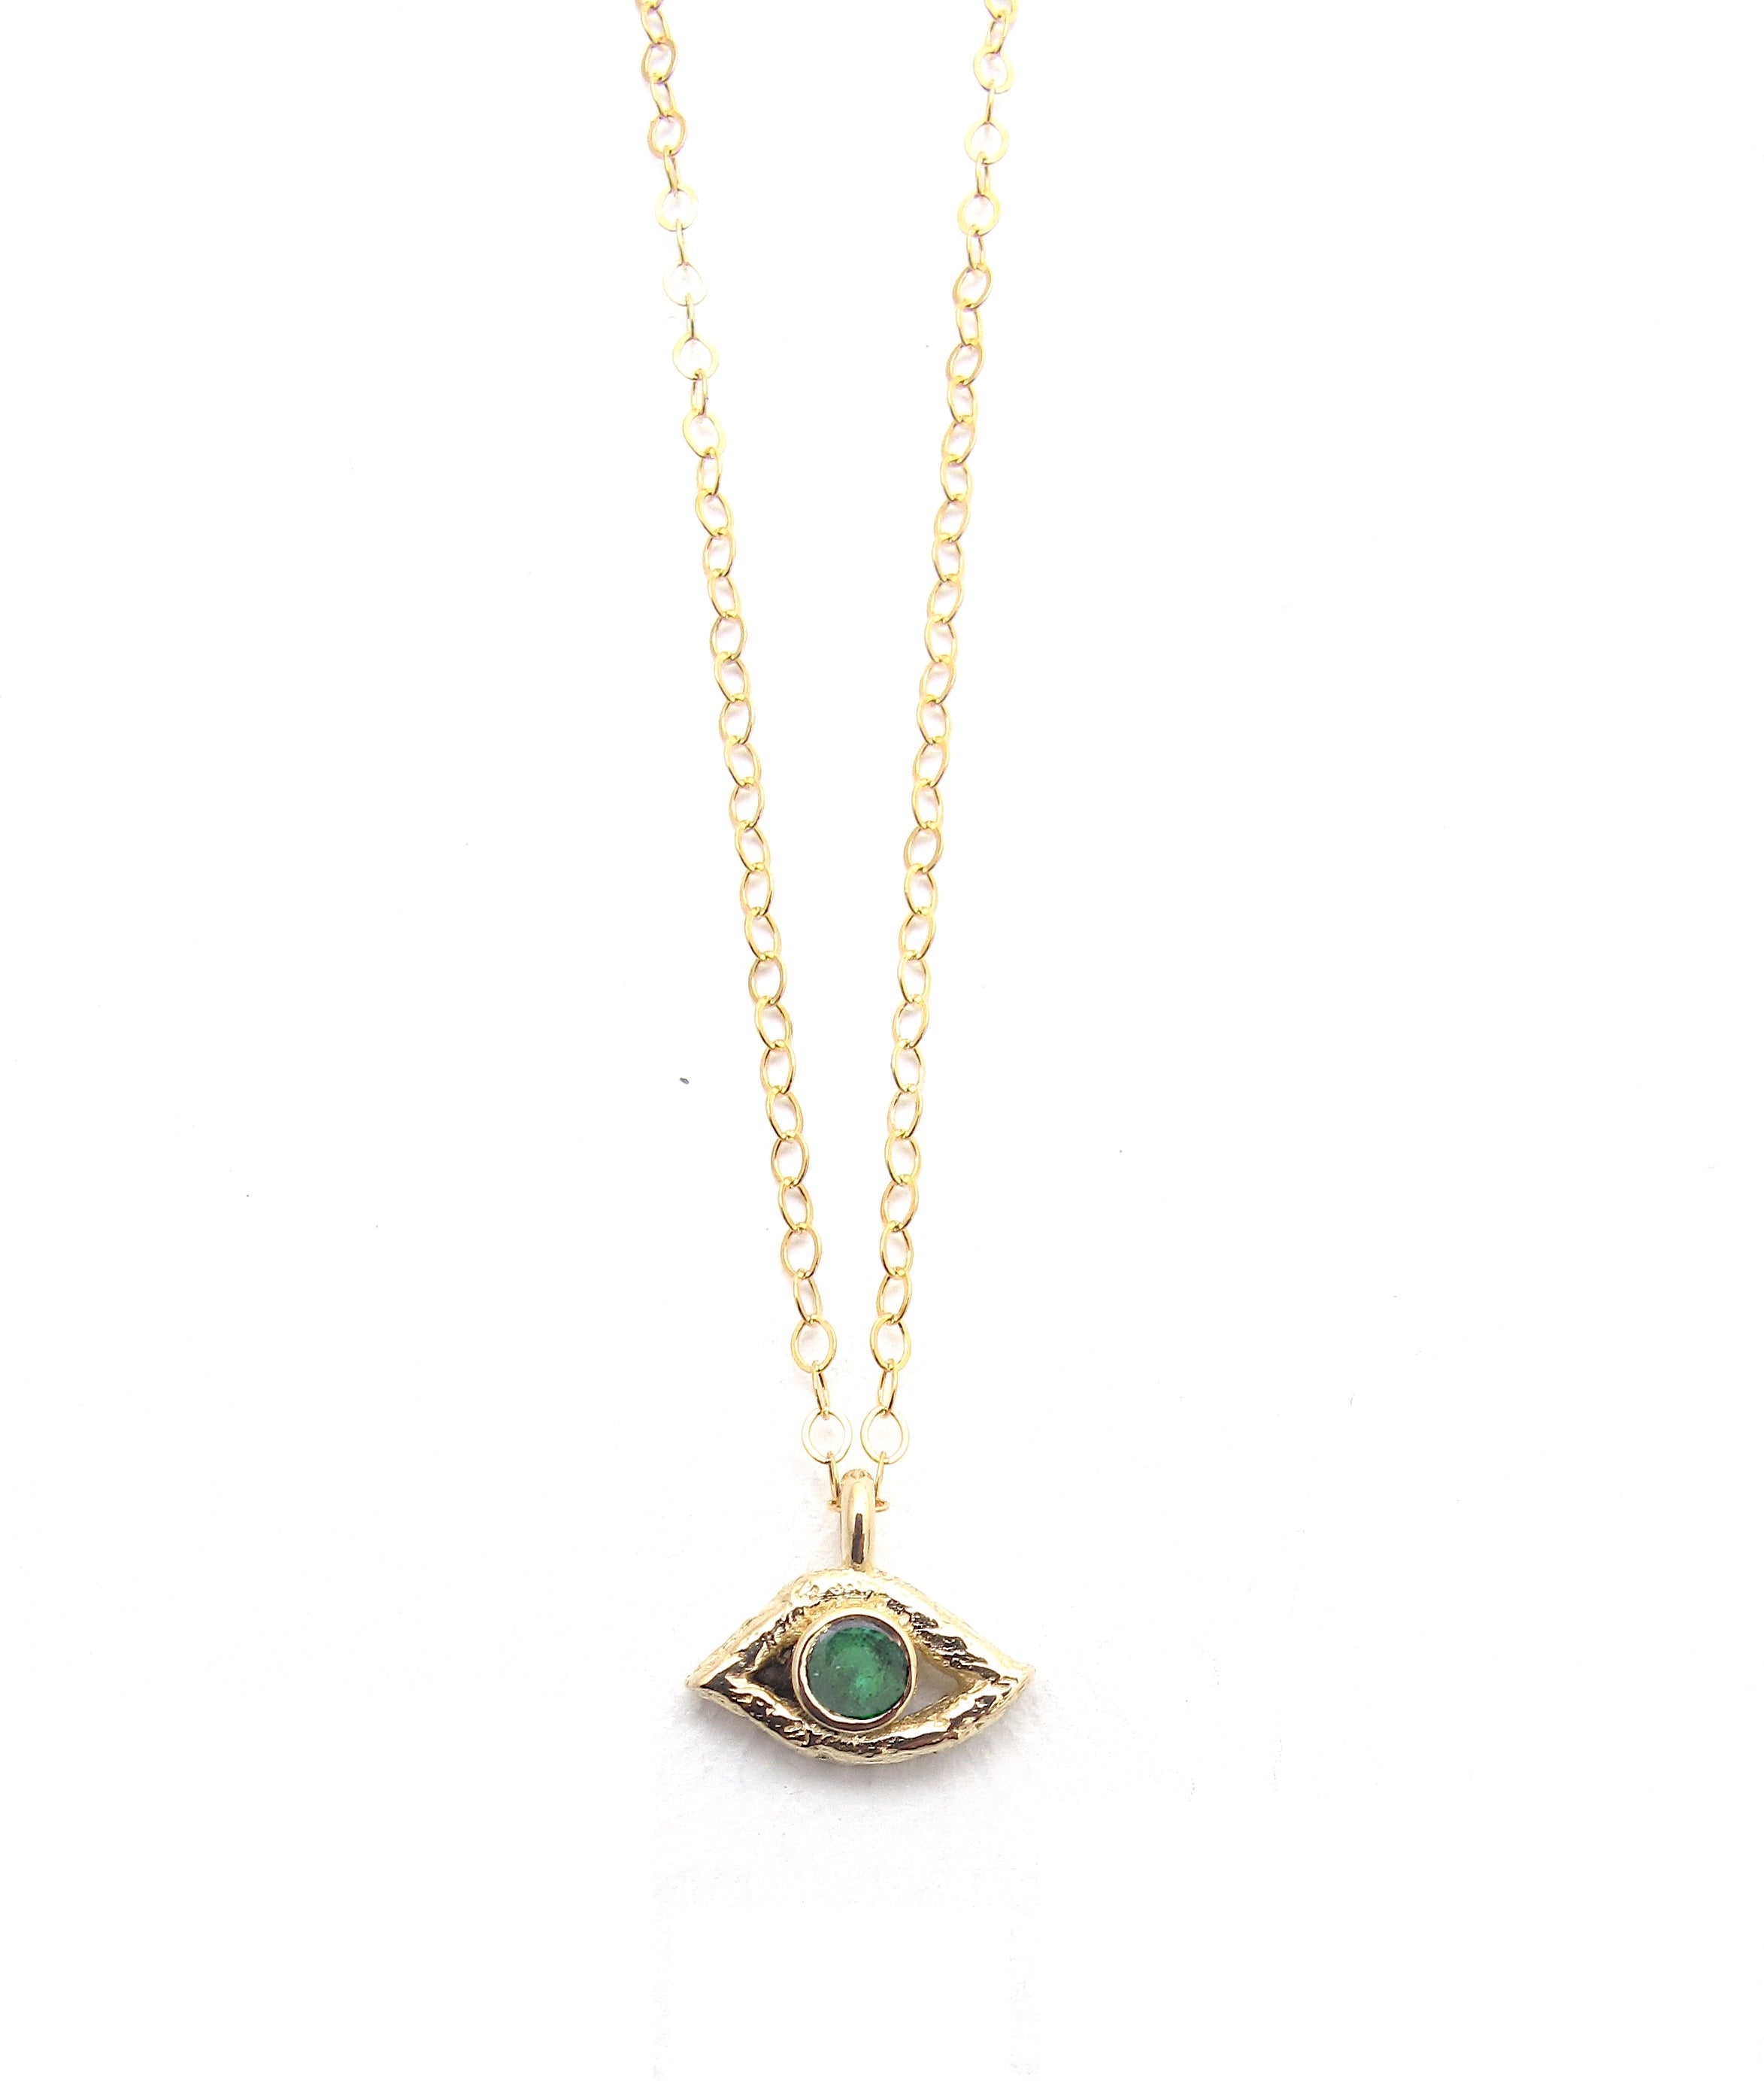 Eye emerald pendant